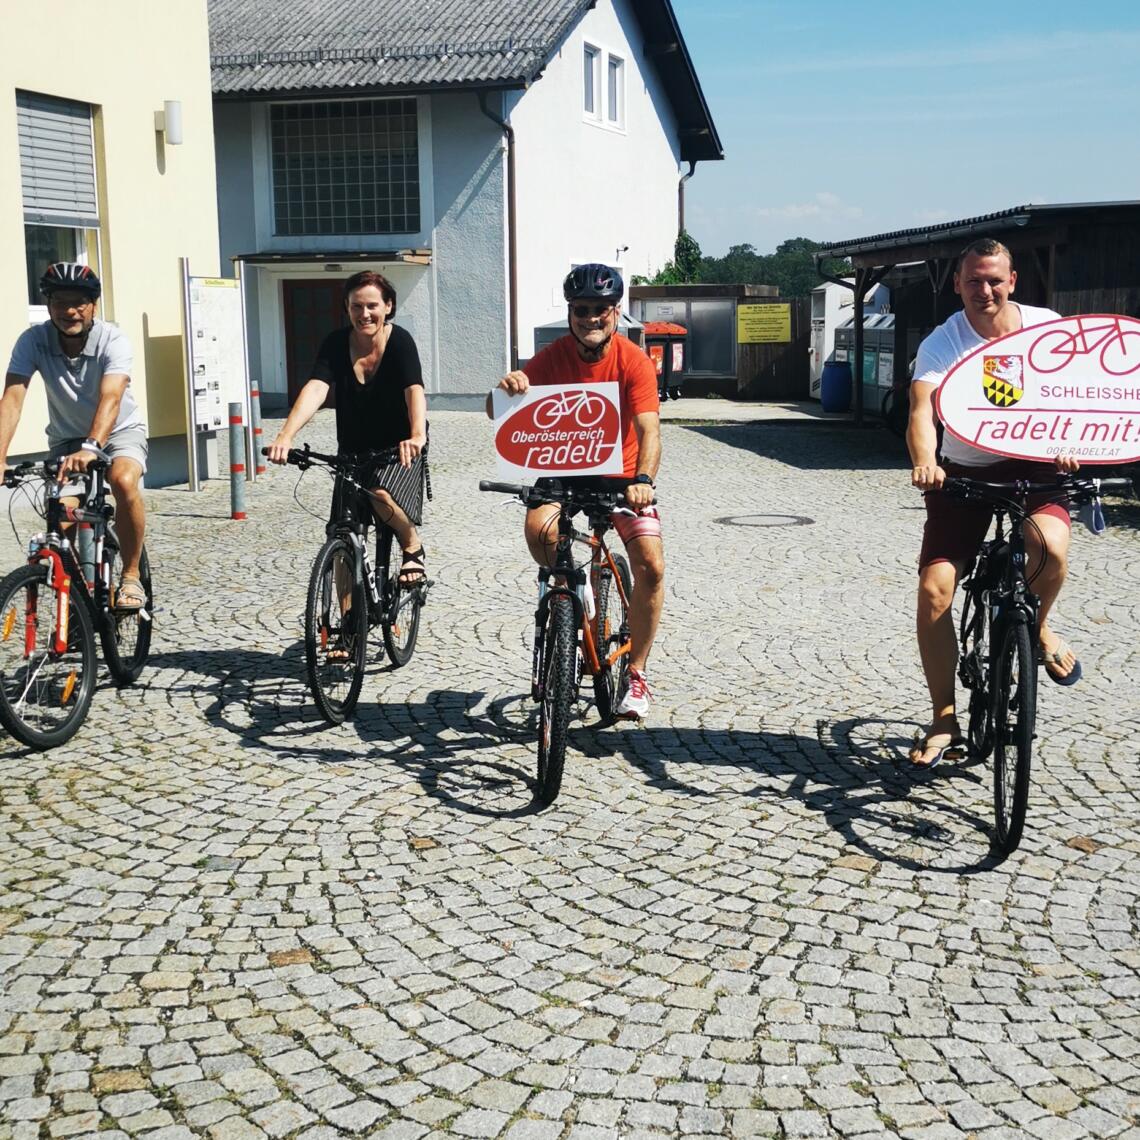 4 Erwachsene fahren mit dem Fahrrad und präsentieren Tafeln " Oberösterreich radelt" und "Schleissheim radelt mit"